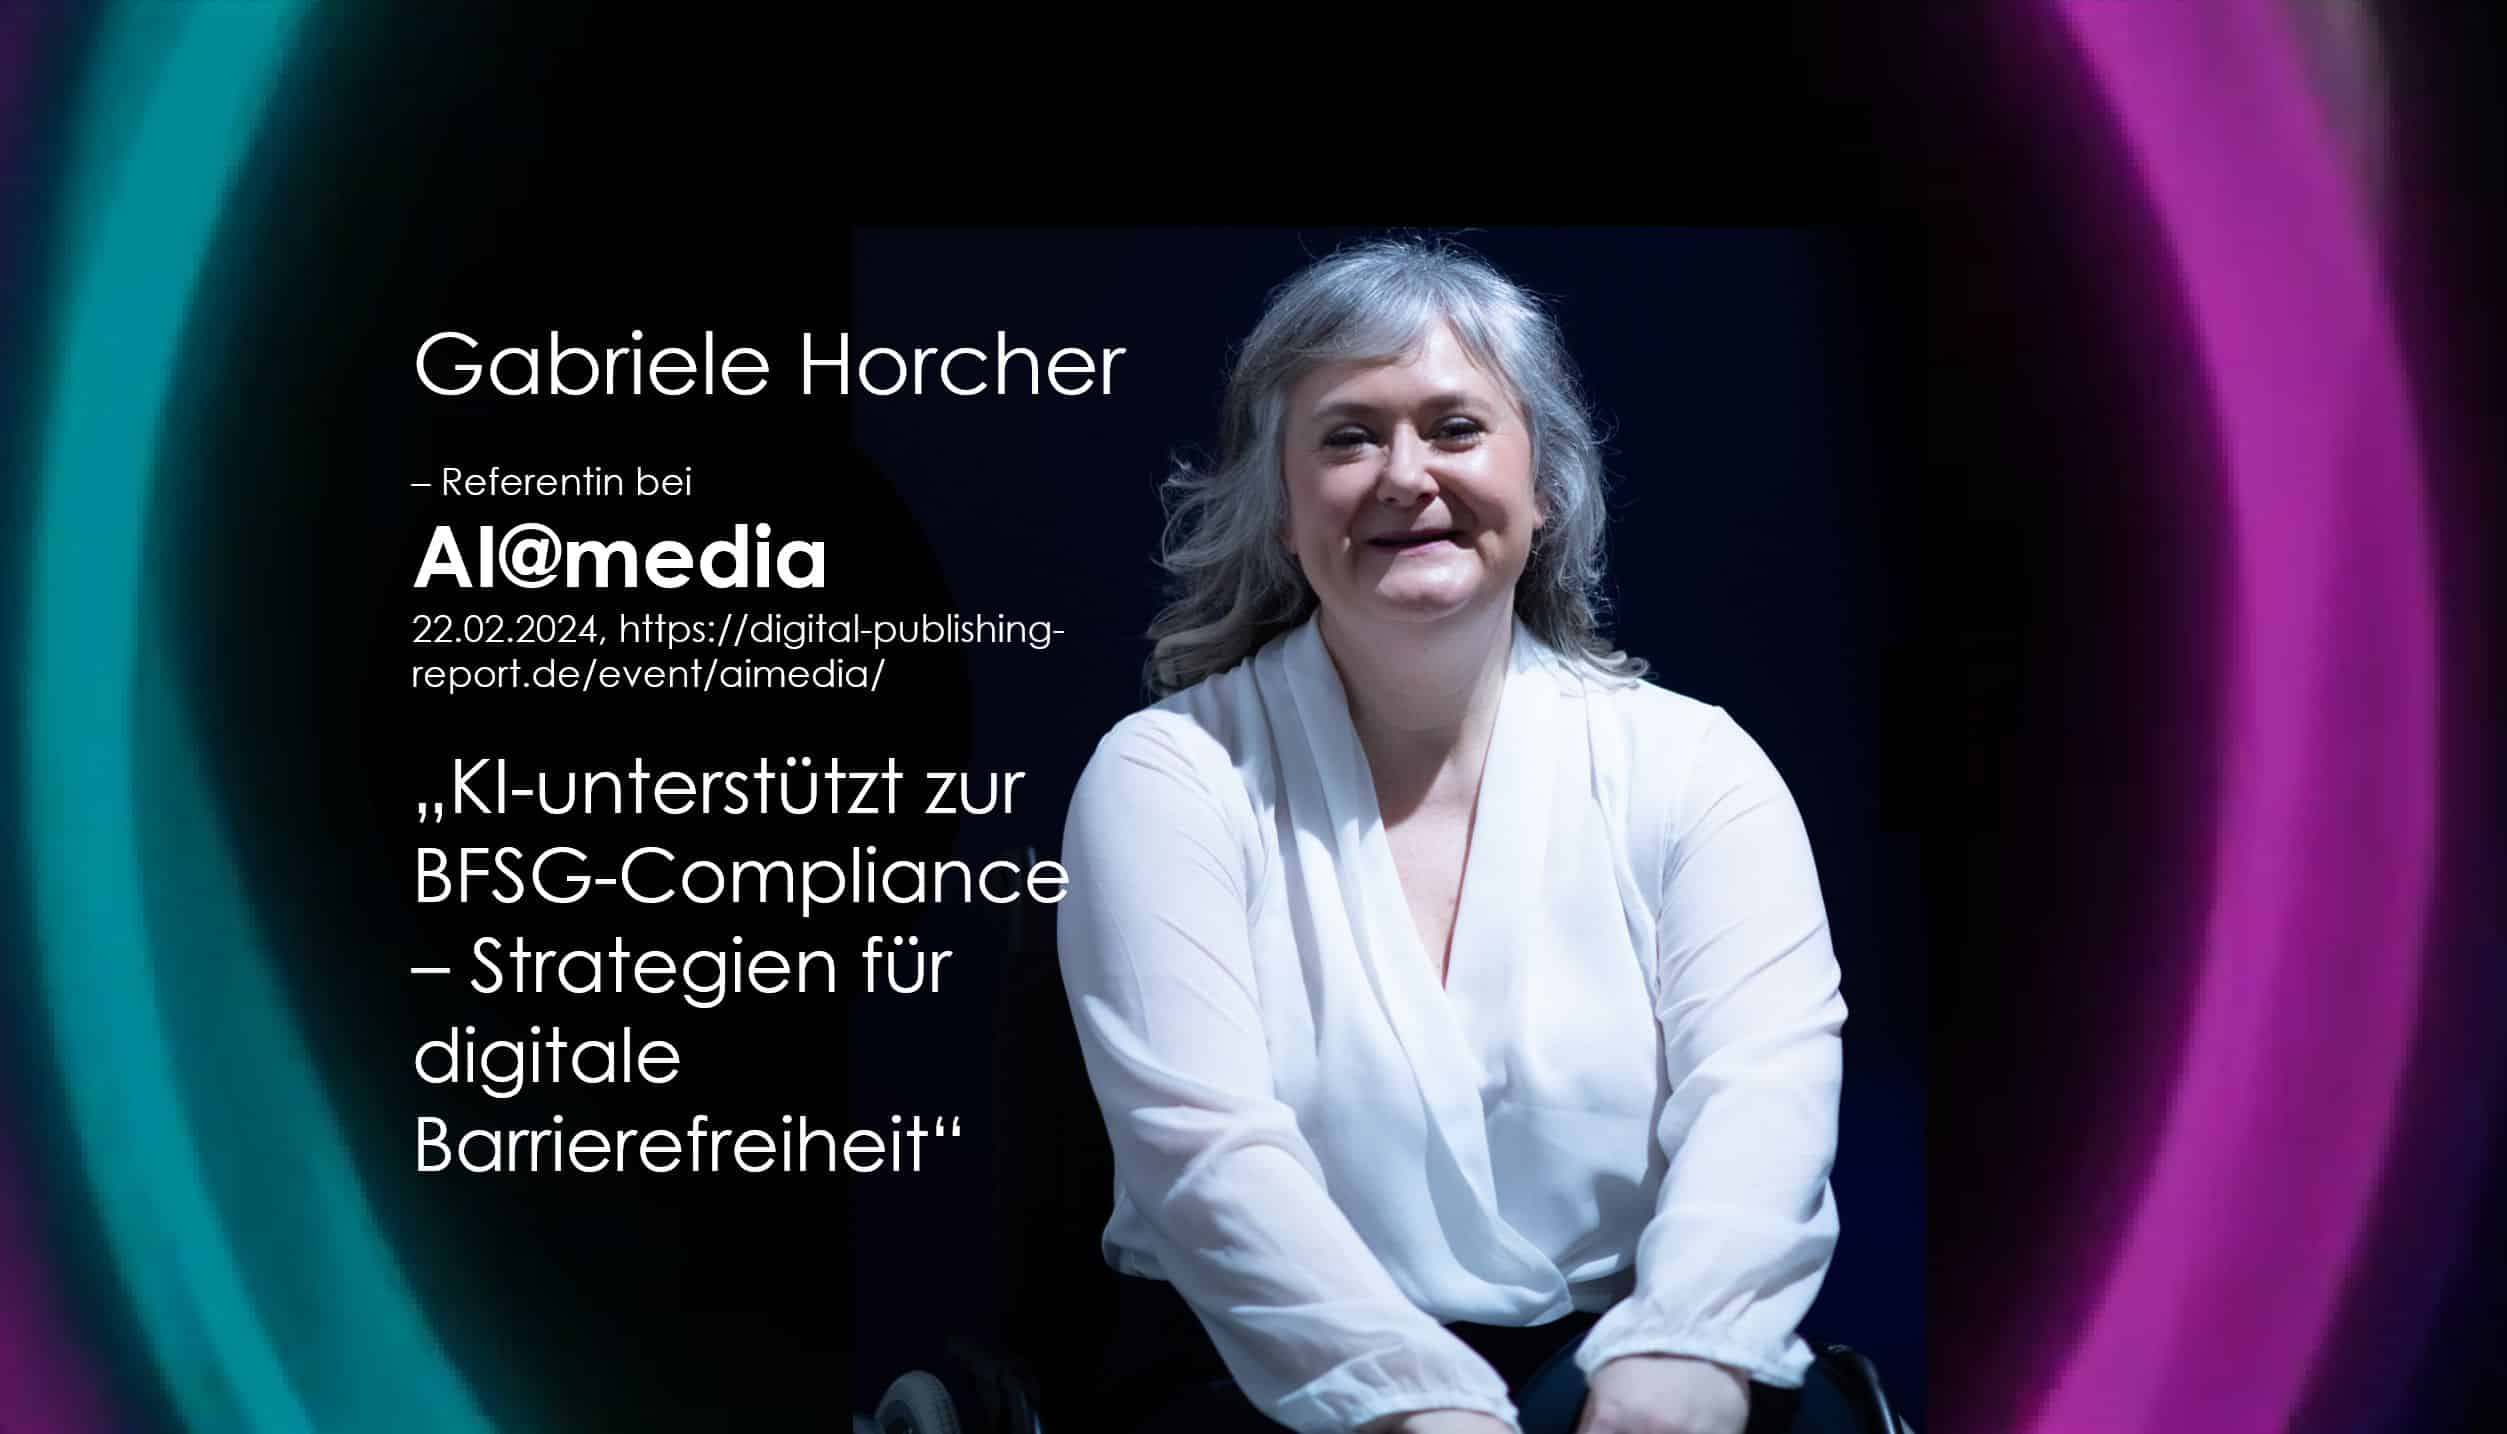 Gabriele Horcher spricht auf der Digitalkonferenz AI@media über digitale Barrierefreiheit